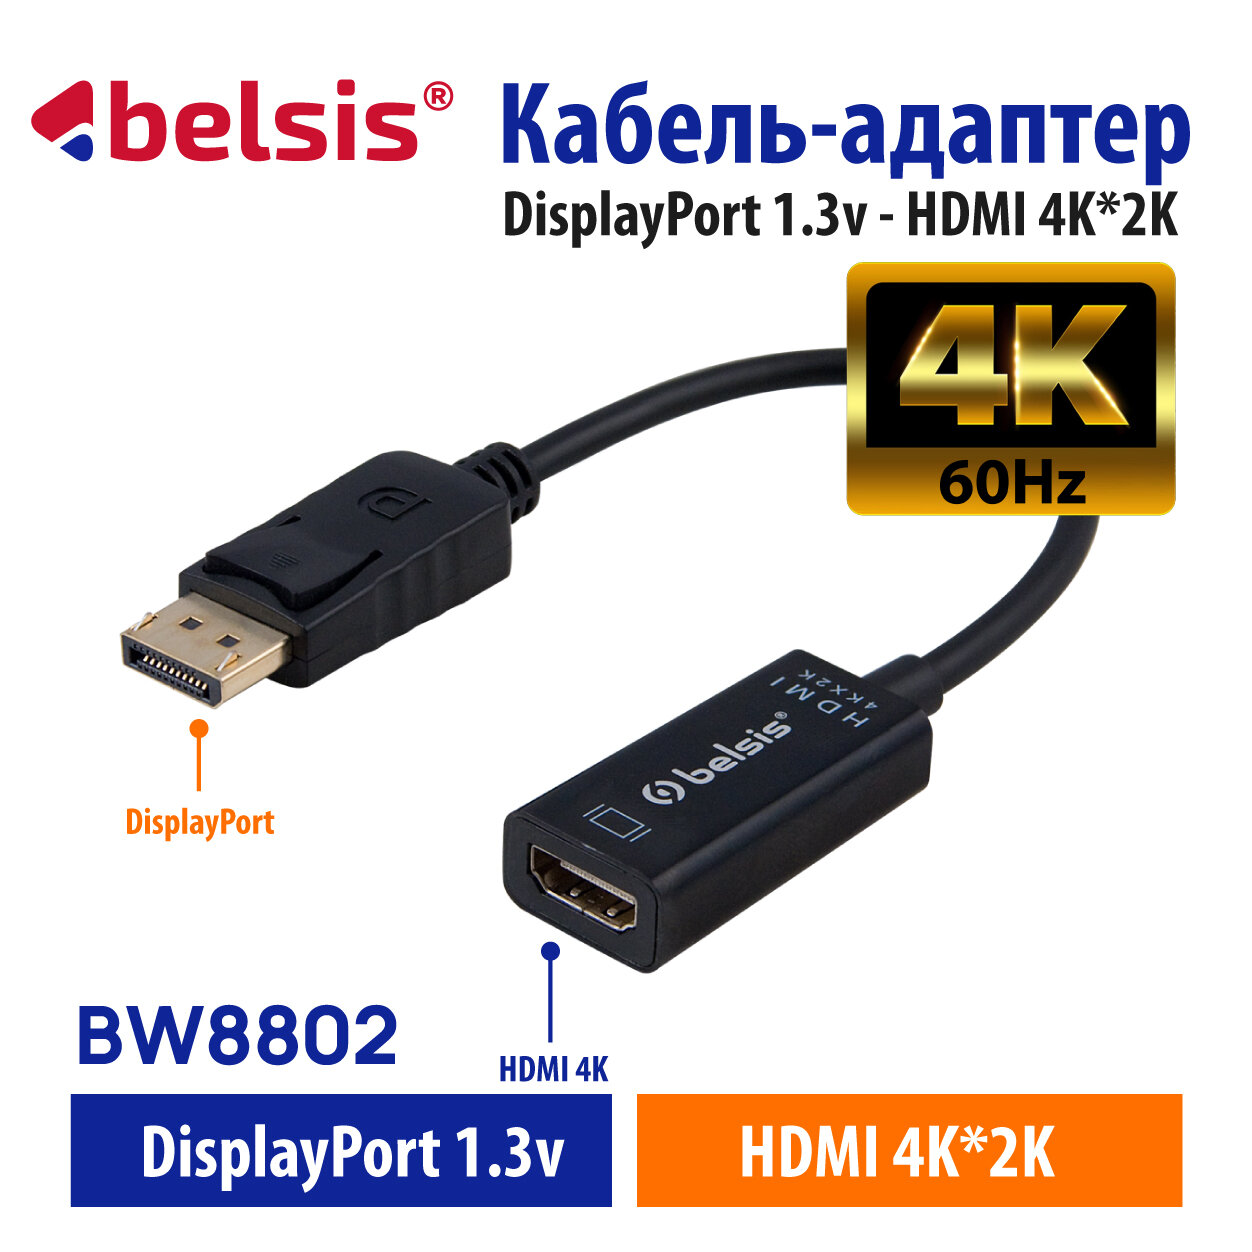 Кабель-адаптер DisplayPort v1.3-HDMI Belsis 4K 60Hz длина 02 метра 4K*2K/BW8802